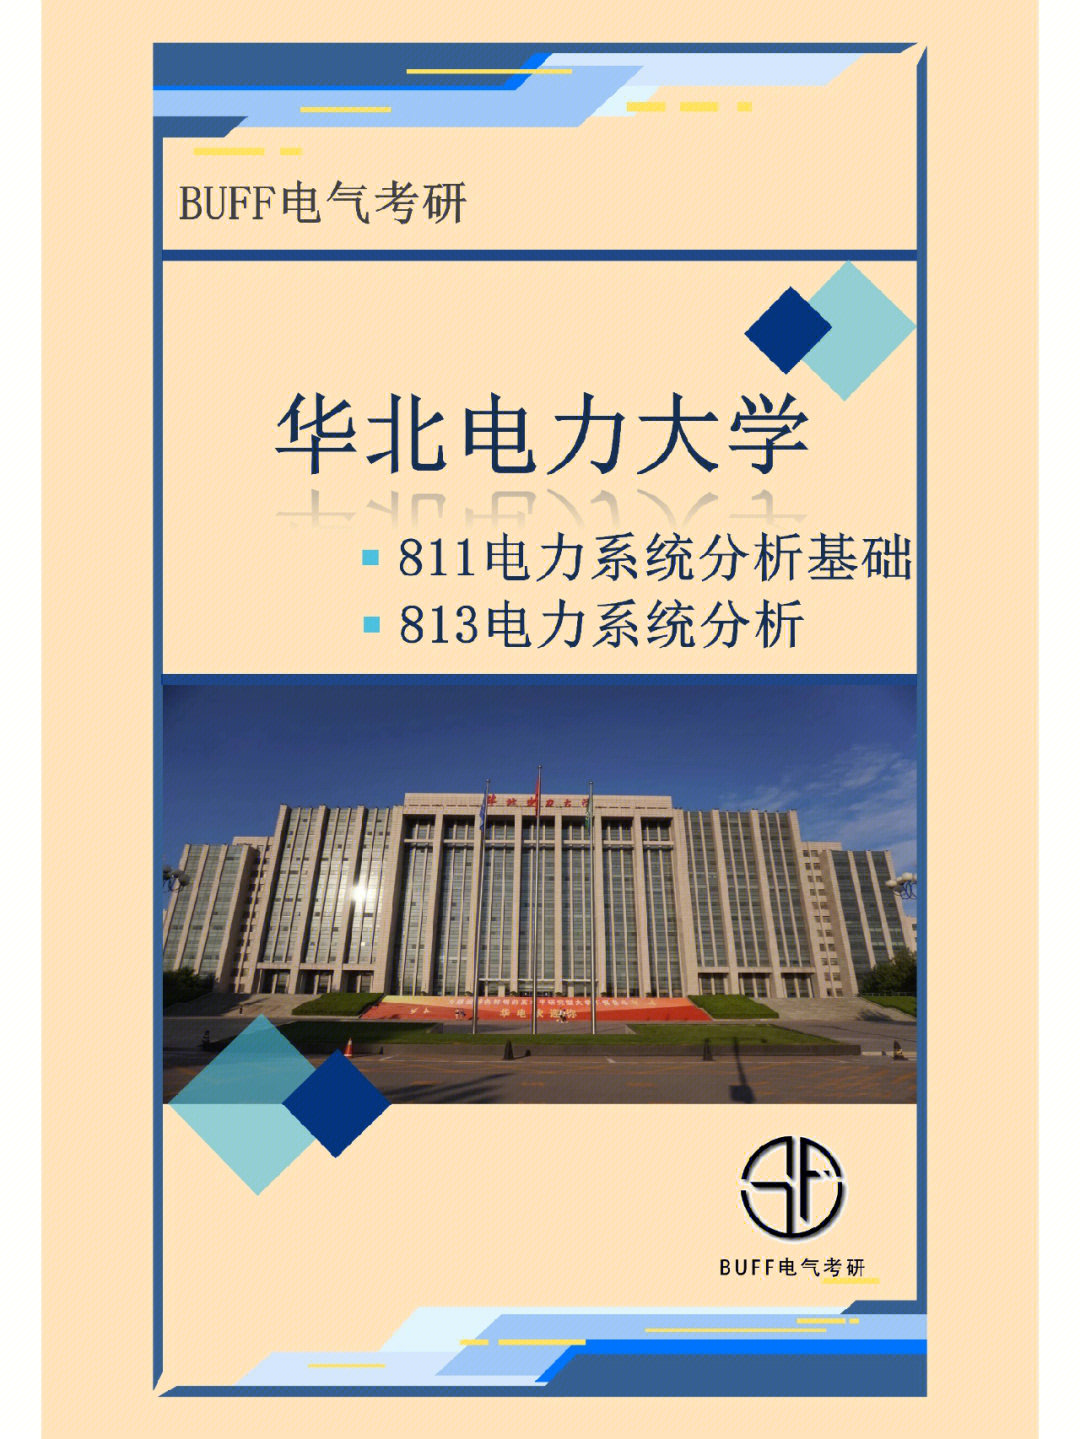 华北电力大学是教育部直属全国重点大学,211高校,中国电力行业的黄埔